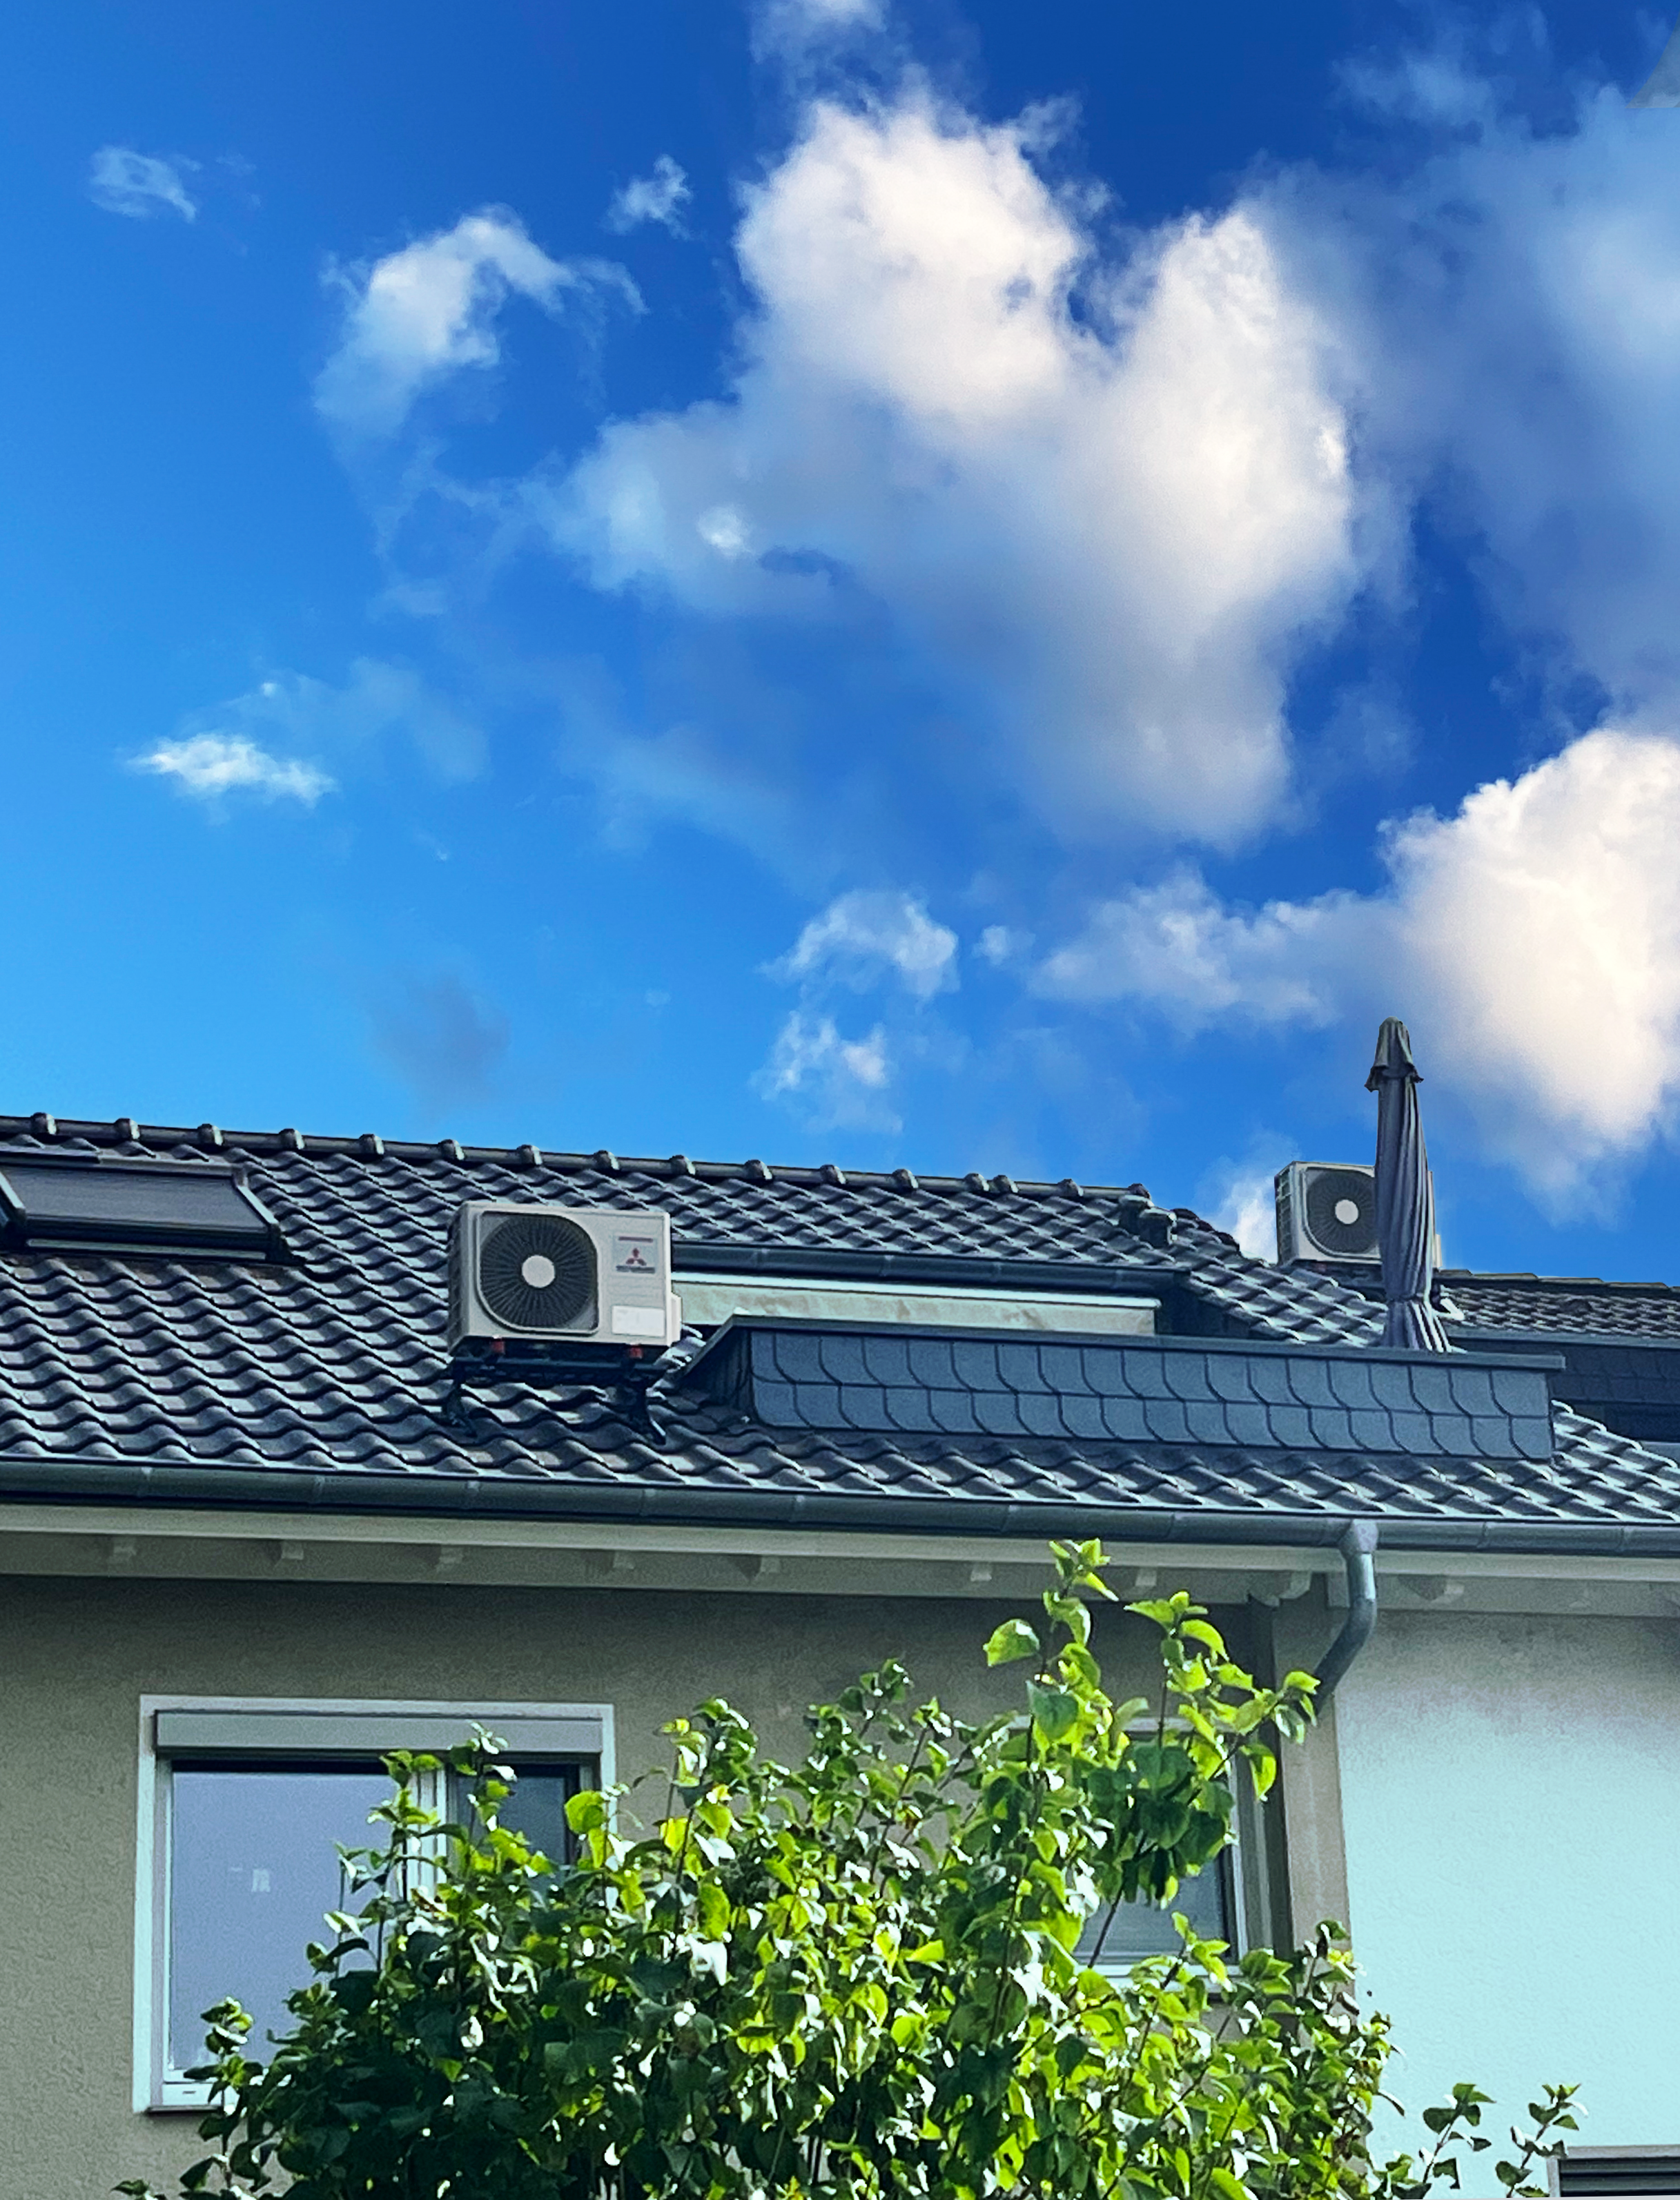 Ein Haus, auf dessen Dach zwei Außengeräte der Mitsubishi-Klimaanlagen stehen. Es ist ein sonniger Tag, man sieht Grün im Vordergrund.